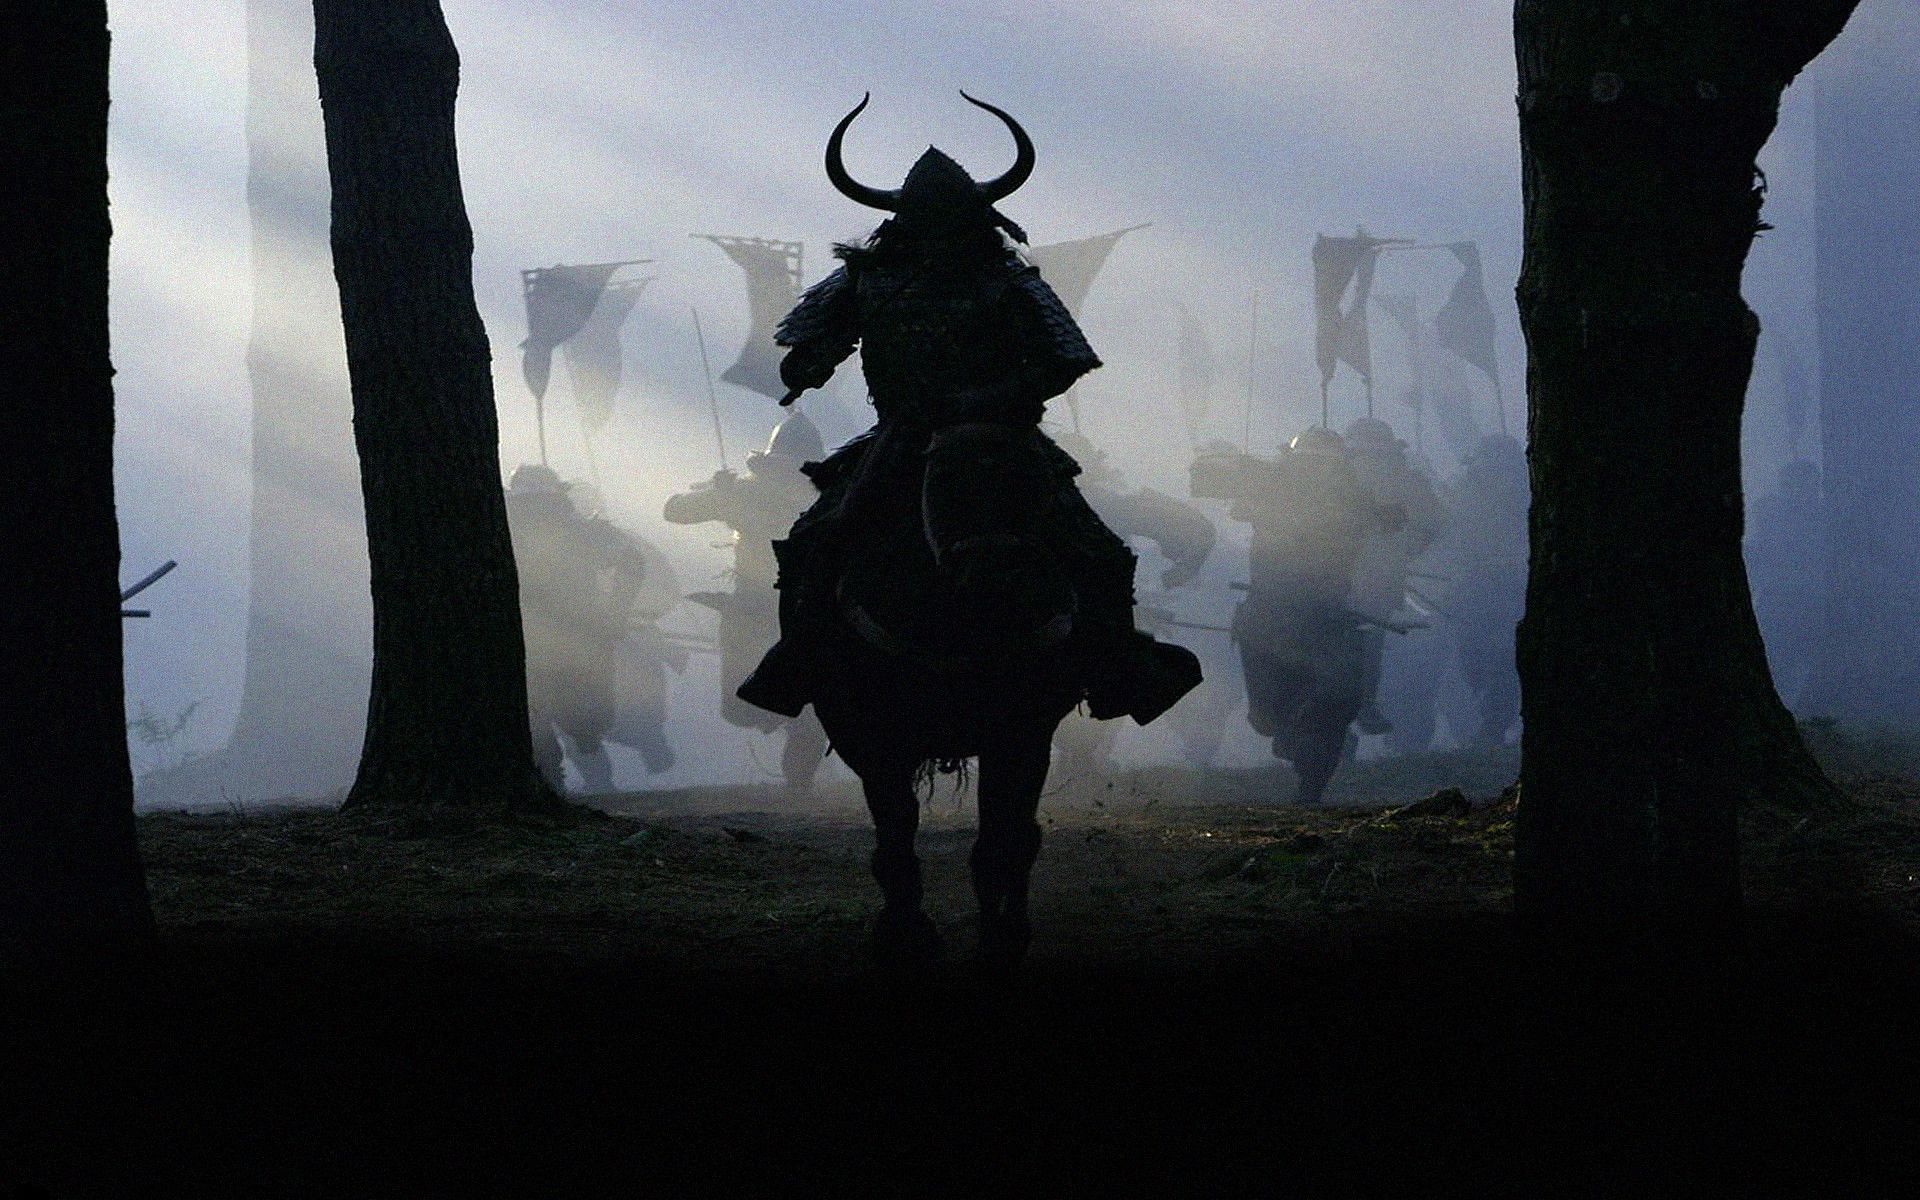 Still from The Last Samurai (Image via Warner Bros.)